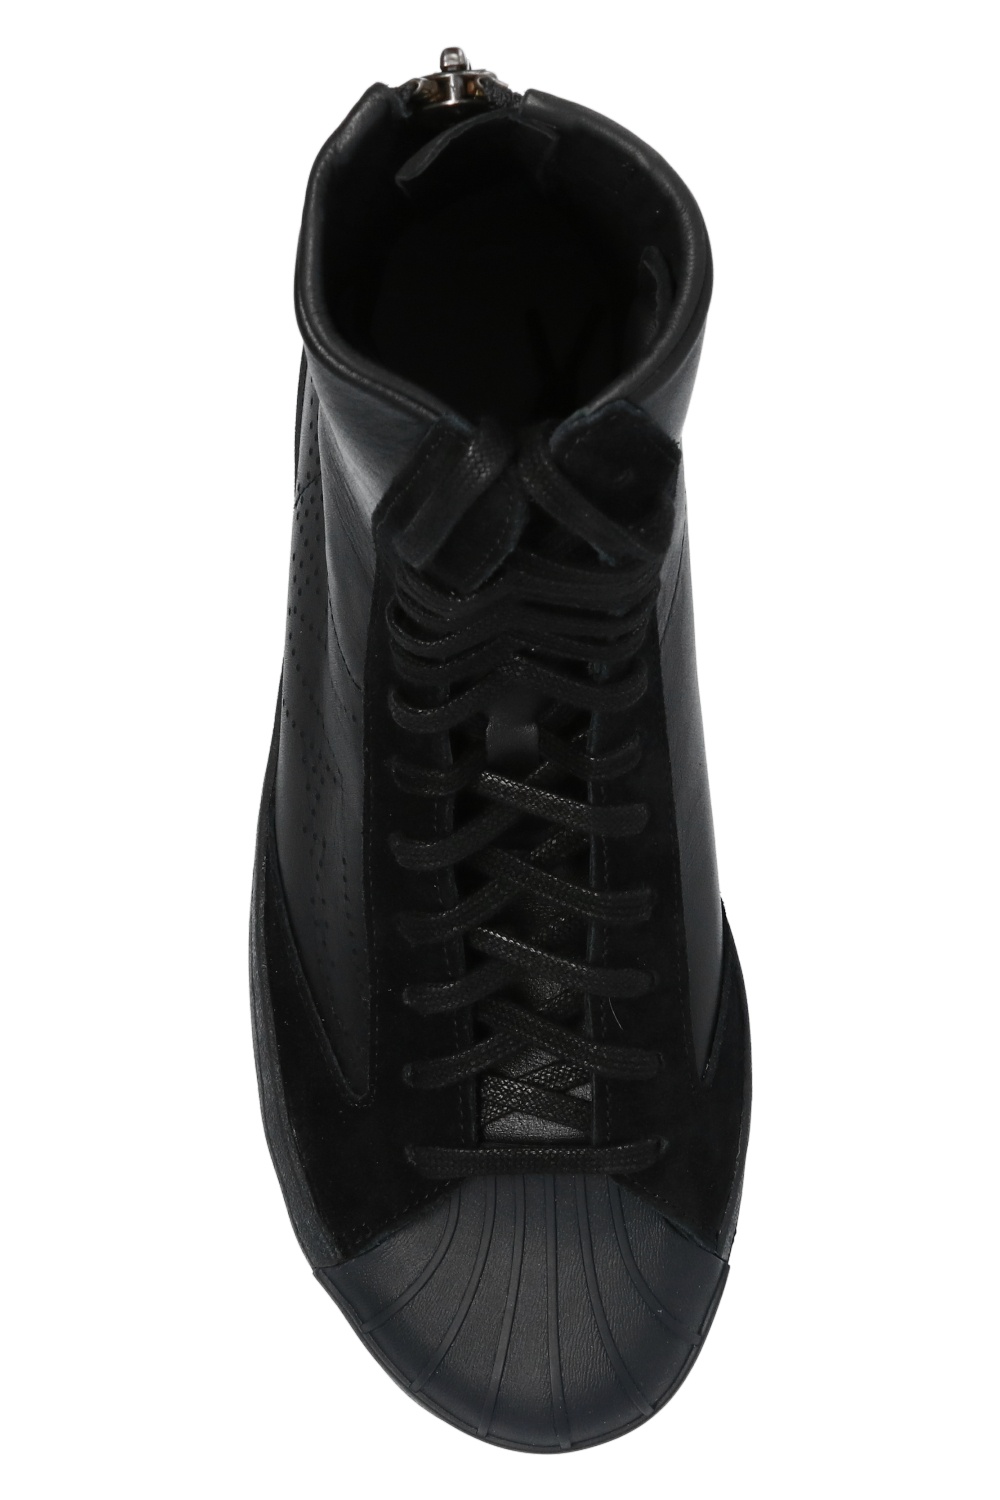 未使用美品ですYohji Yamamoto × adidas MEGA HIGH BLACK - 靴